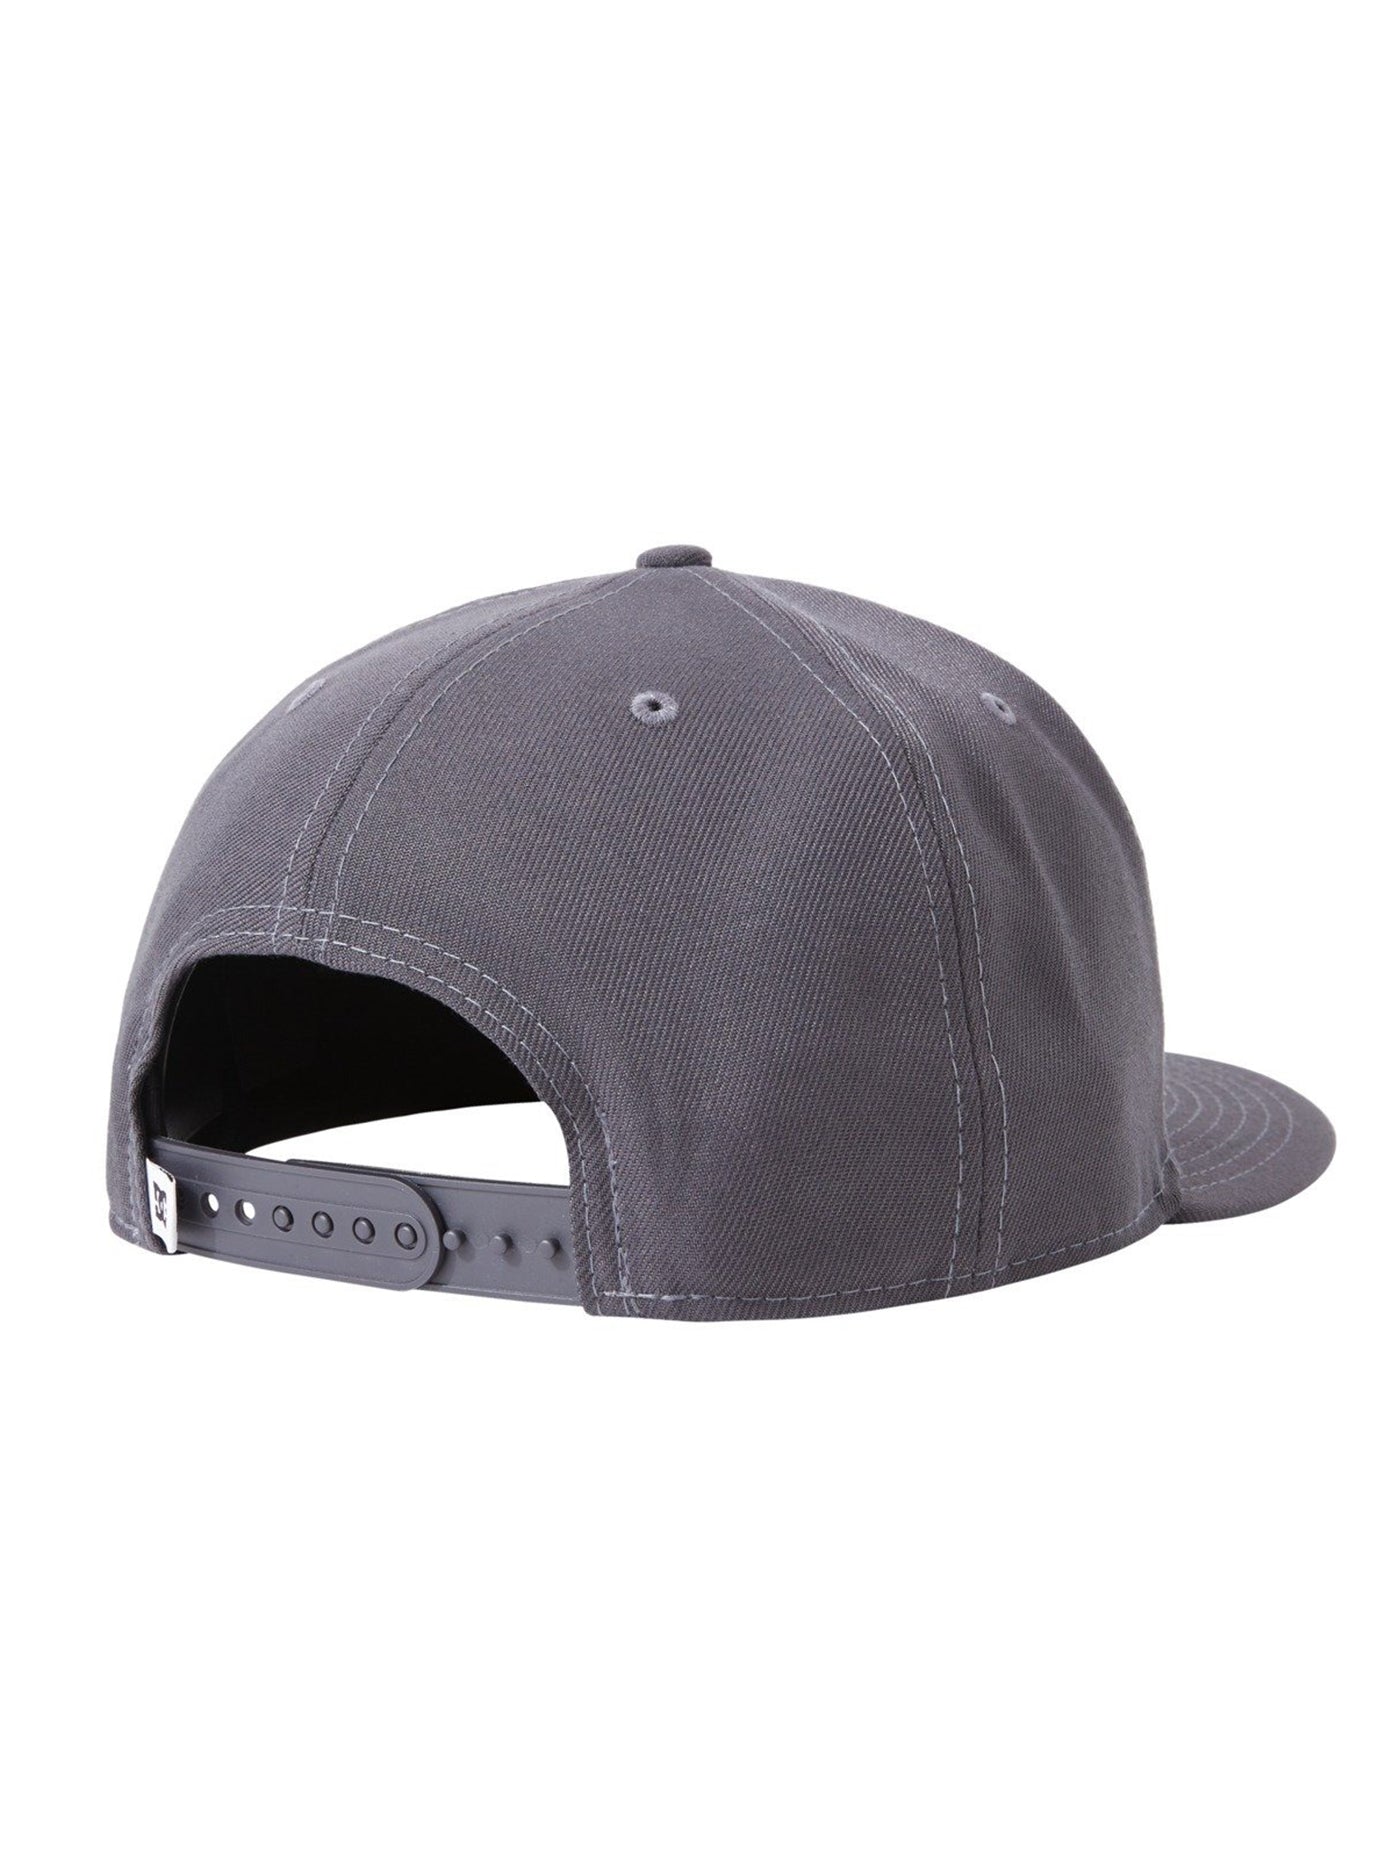 DC Fielder Snapback Hat